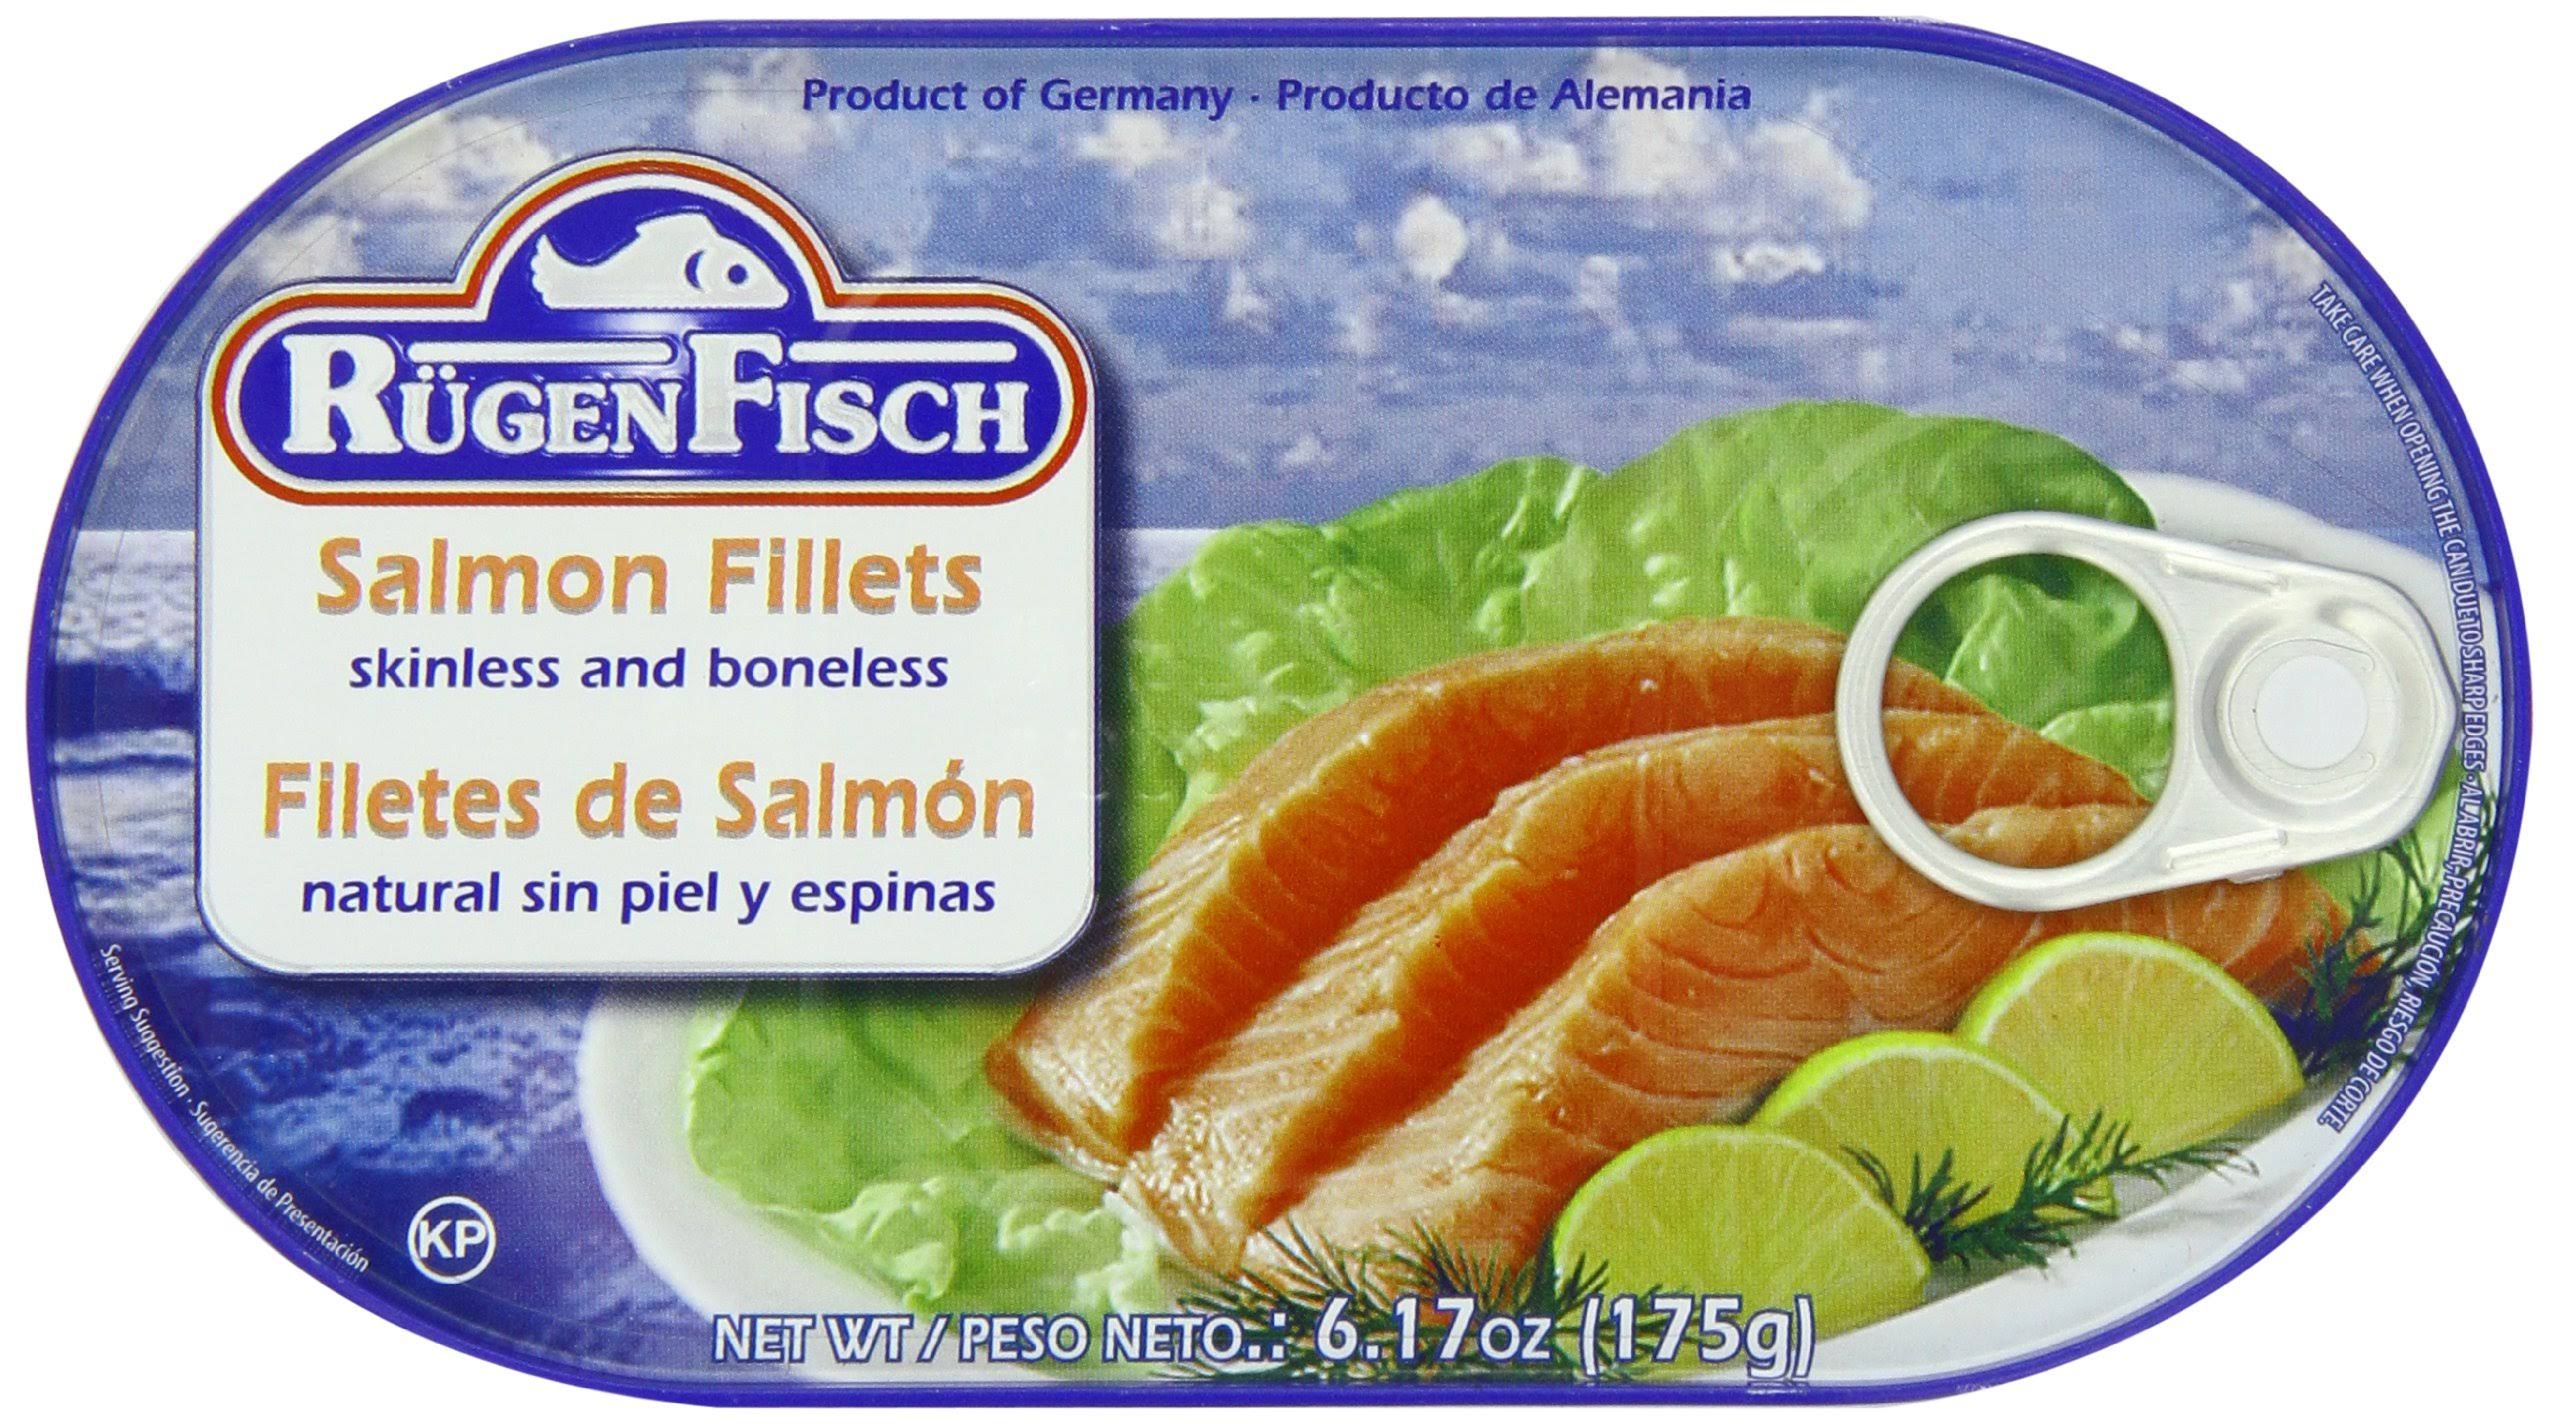 Rugen Fisch Salmon Fillets